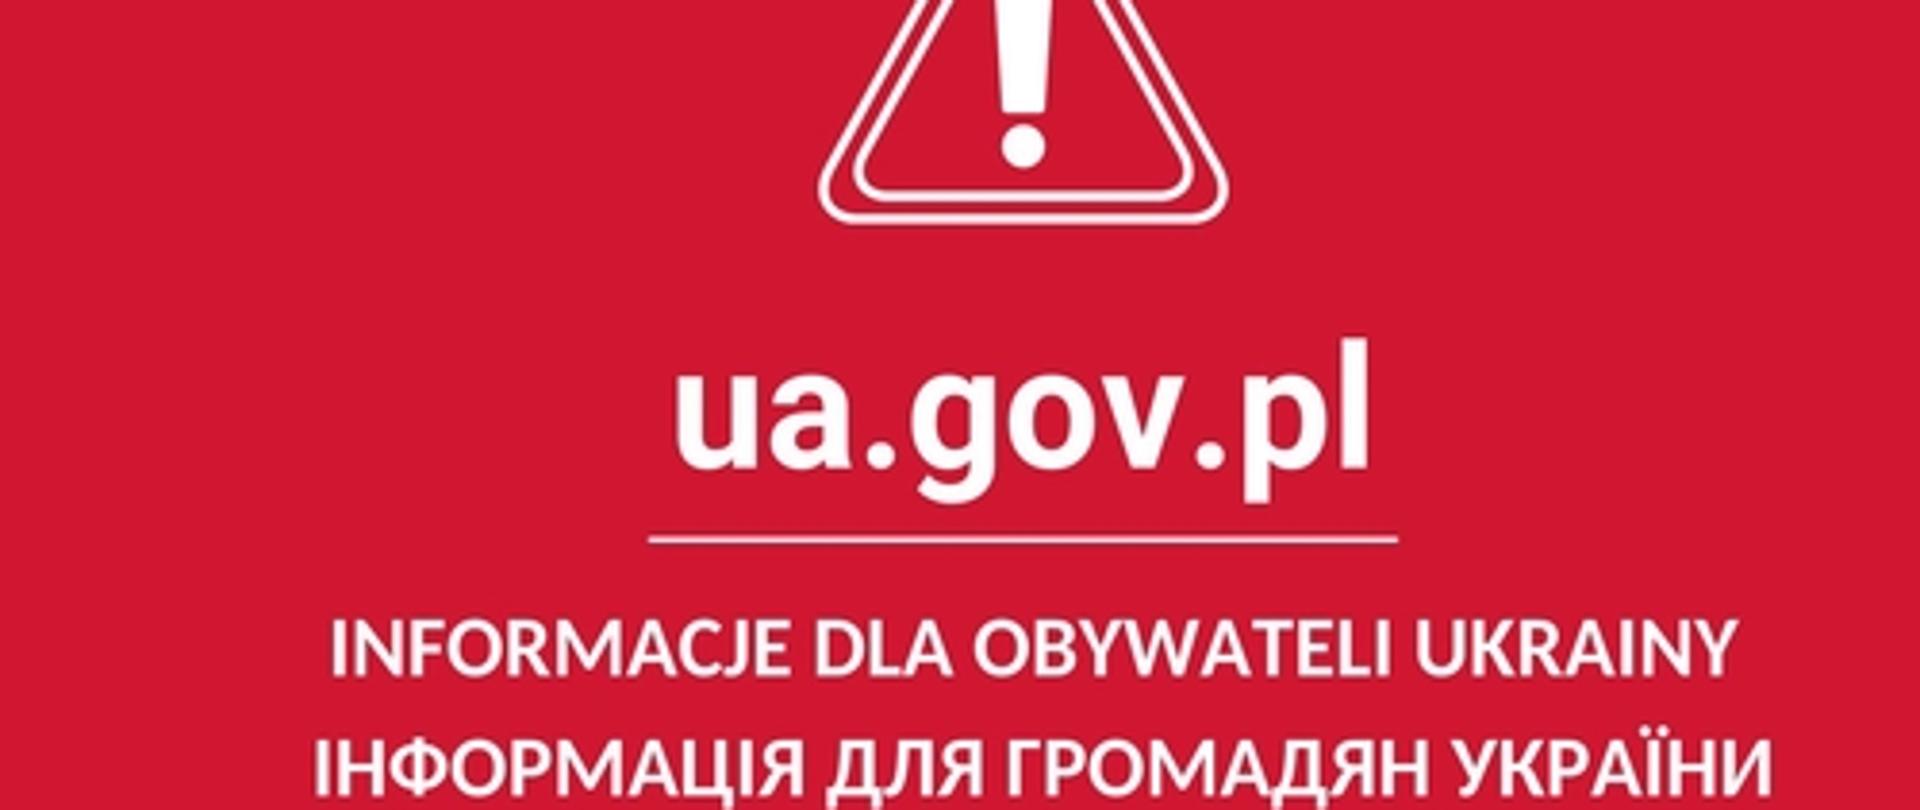 ua.gov.pl